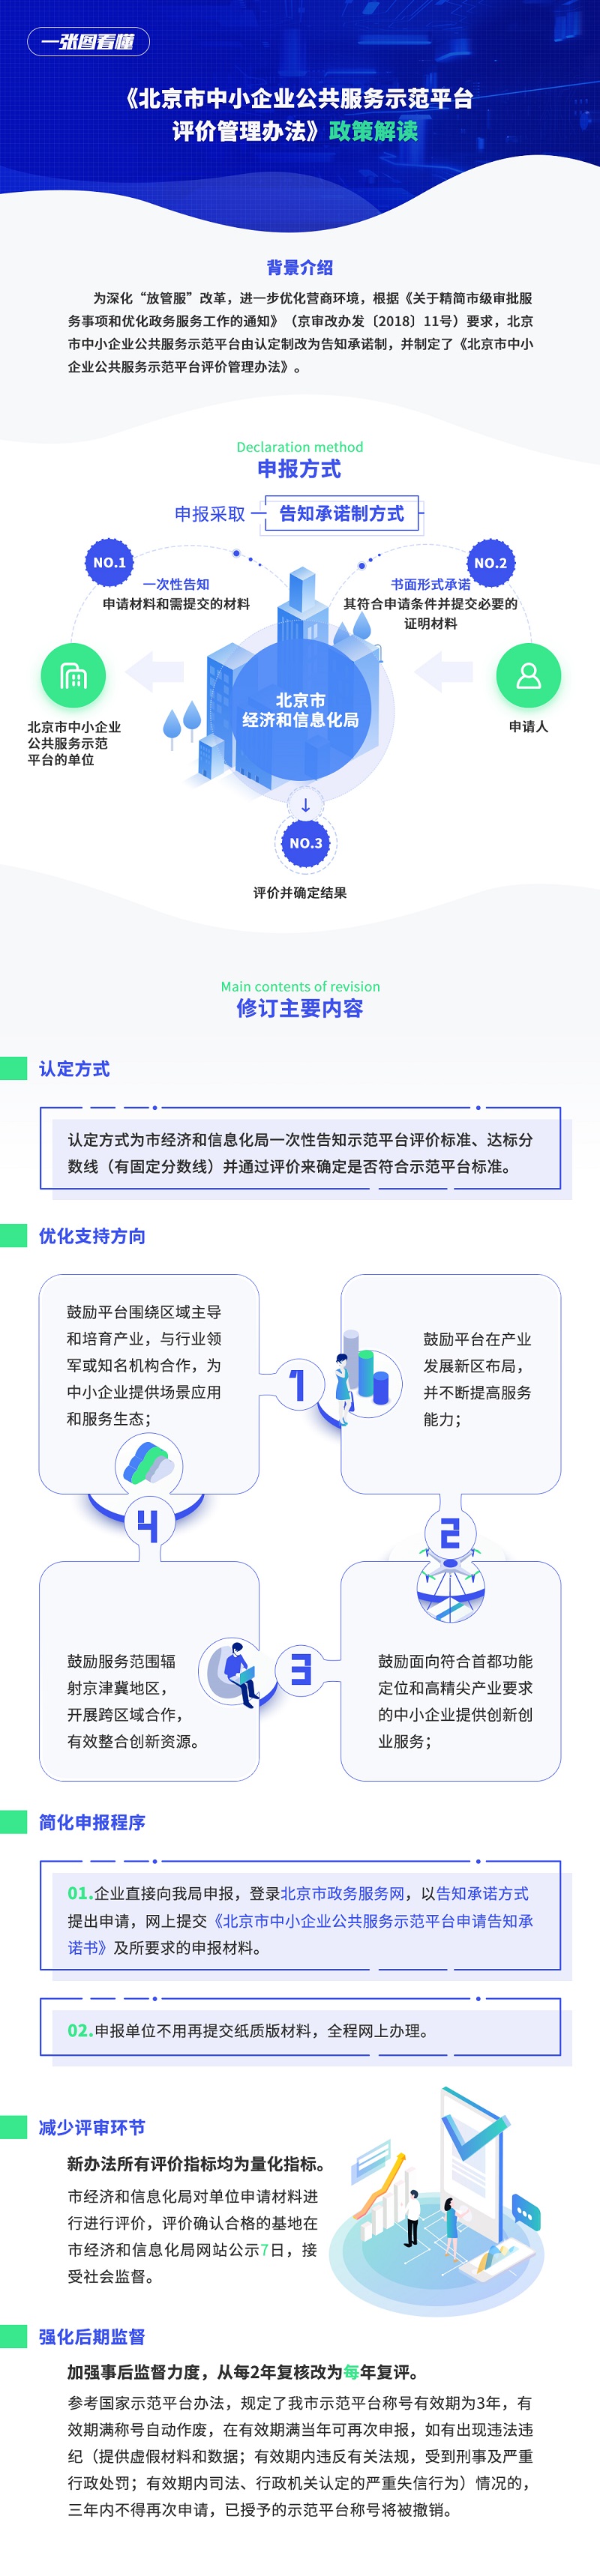 一张图看懂《北京市中小企业公共服务示范平台评价管理办法》.jpg